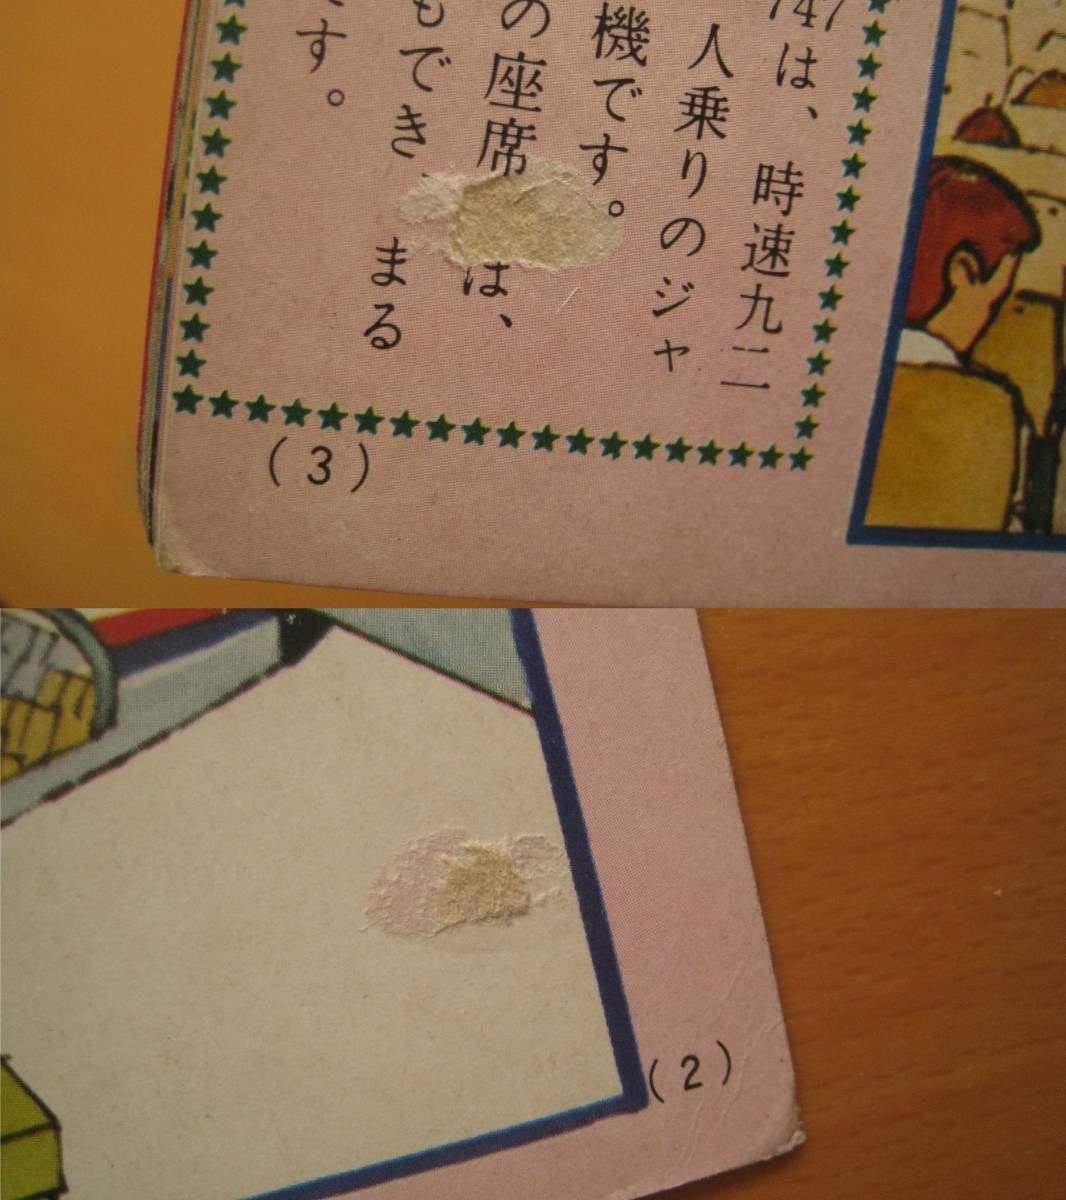  клей было использовано / Shogakukan Inc.. ребенок книга с картинками 1970 год 9 месяц номер / NO6/ Showa Retro /. рисовое поле . 2 Ultra Seven / транспортное средство / Okazaki . самец / булавка pon хлеб * дополнение нет * страница нехватка 